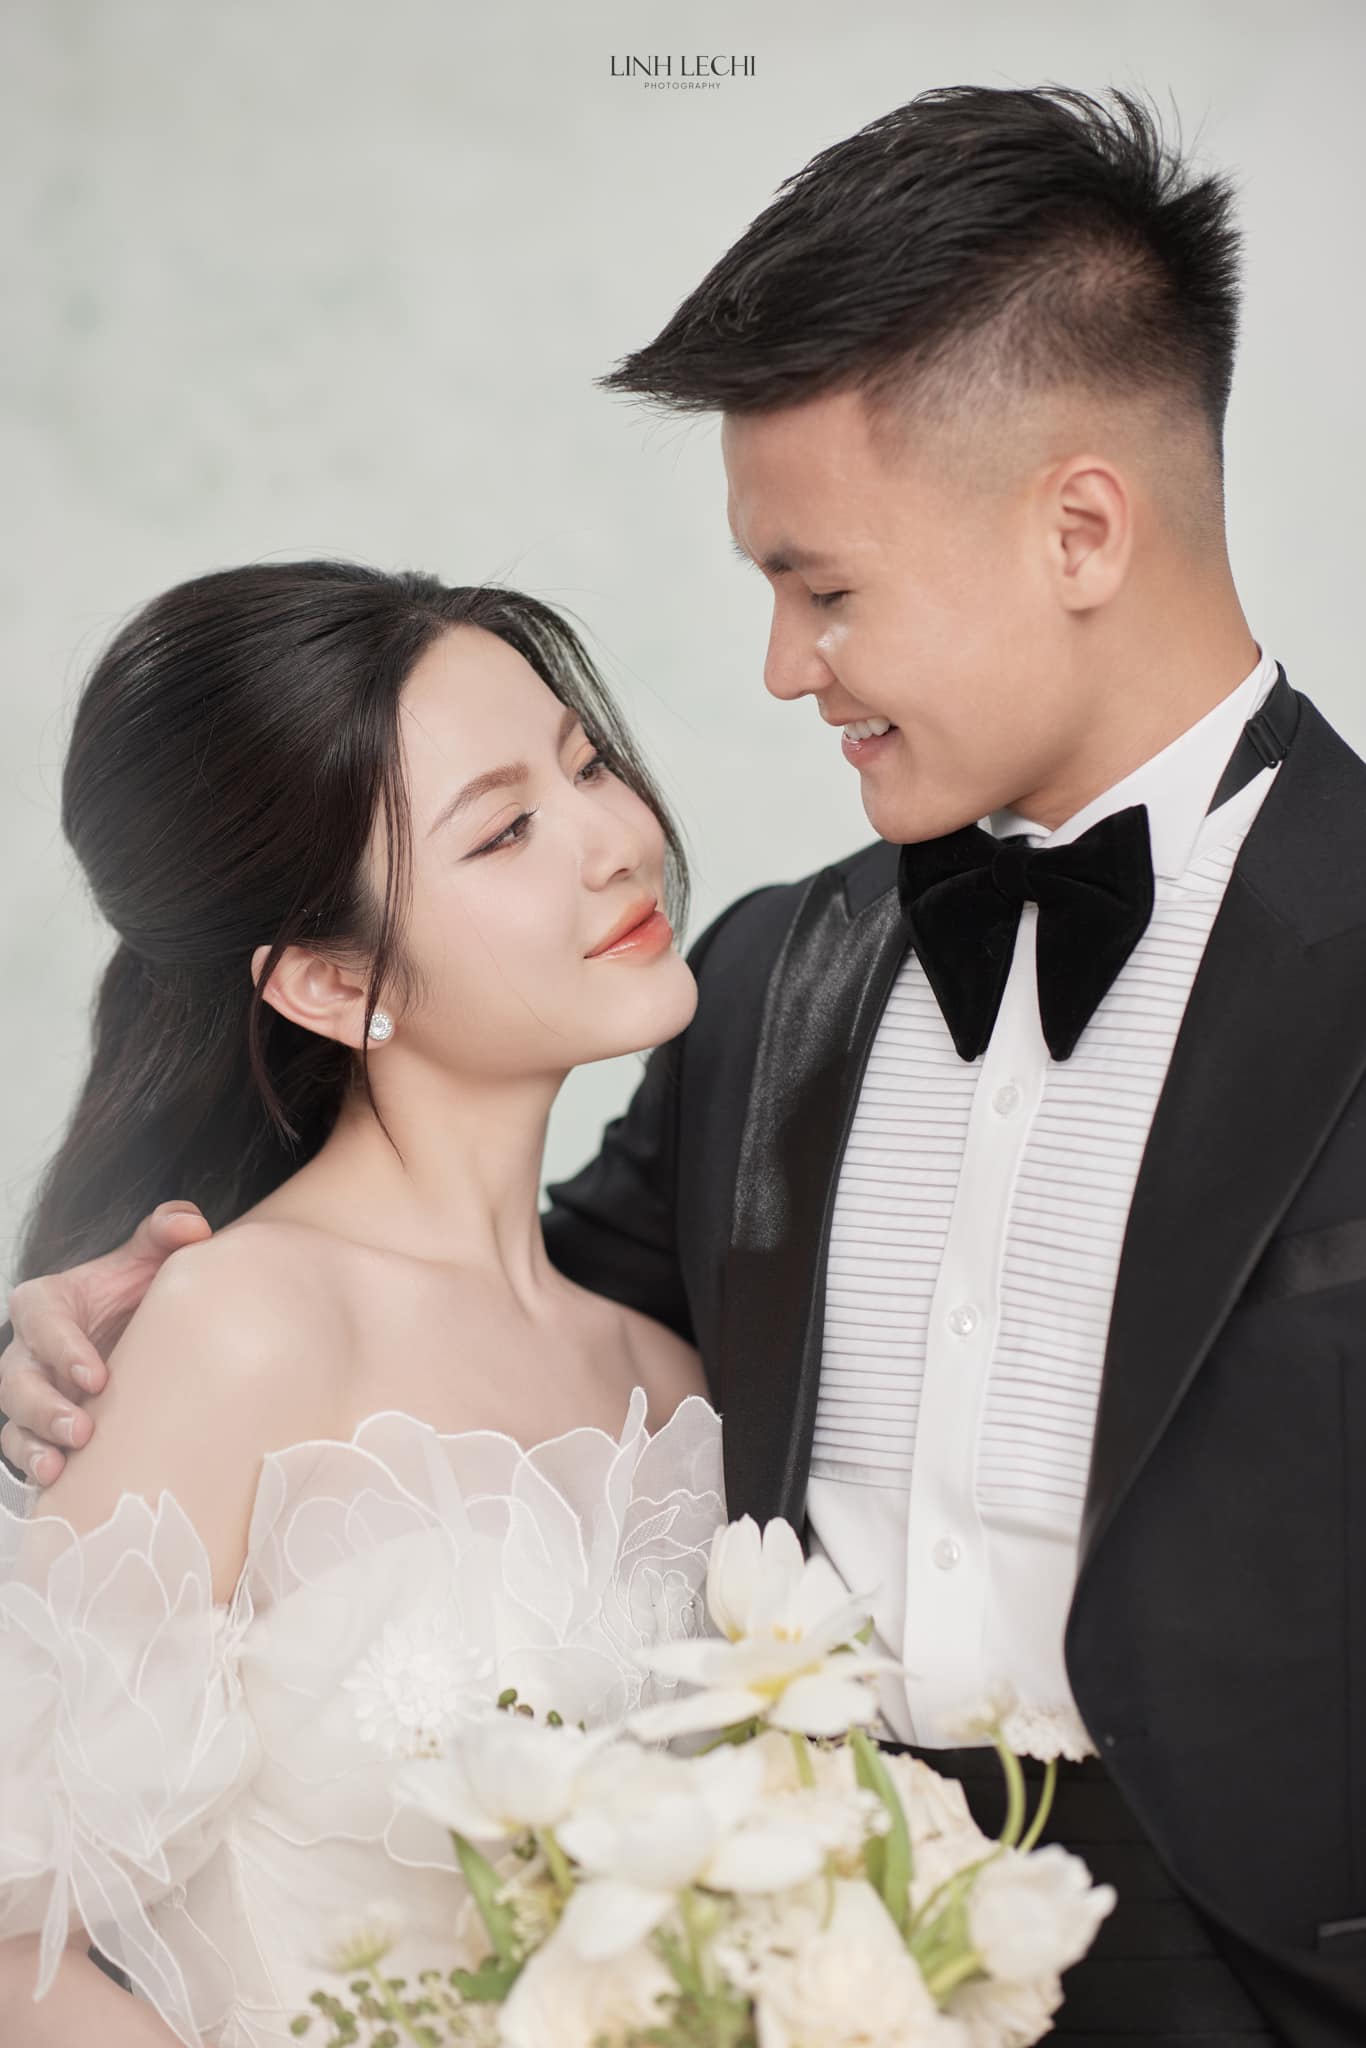 Quang Hải và Chu Thanh Huyền tung ảnh cưới, nhưng chiều cao 'bất ổn' của chú rể gây hoang mang - ảnh 1